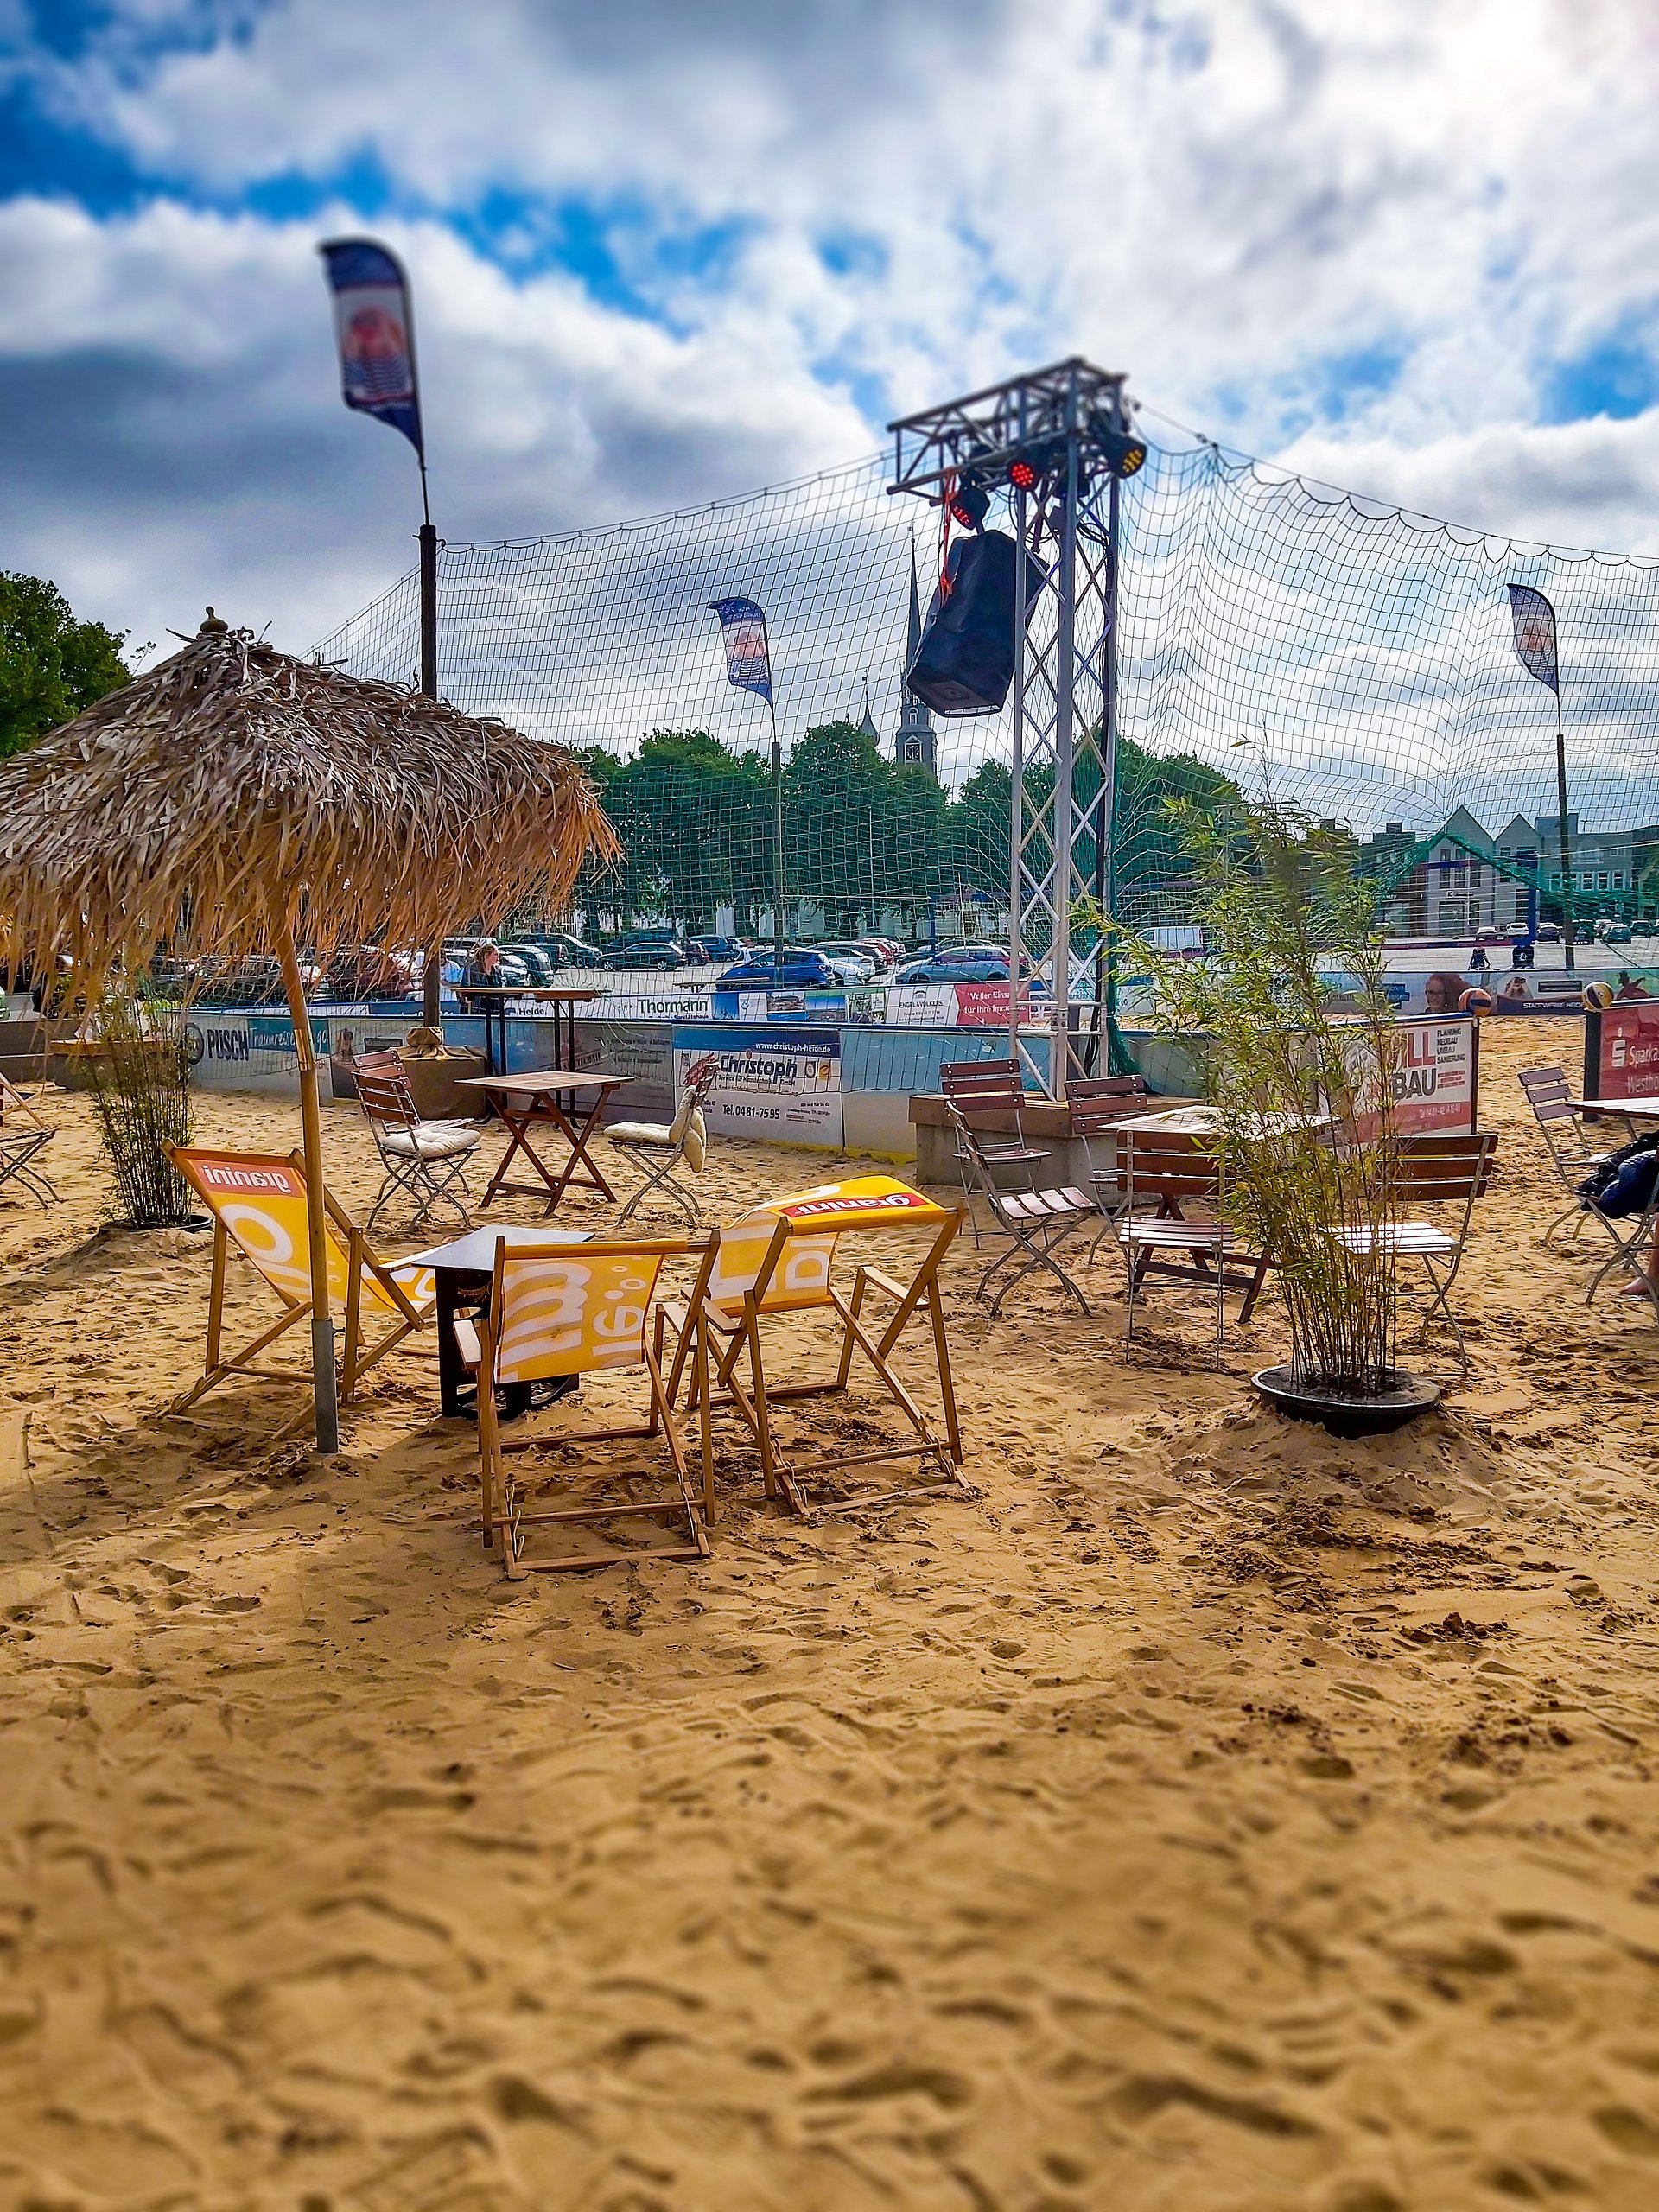 Im Hintergrund ist das Beachvolleyball-Feld zu sehen, im Vordergrund stehen Stühle und Tische im Sand